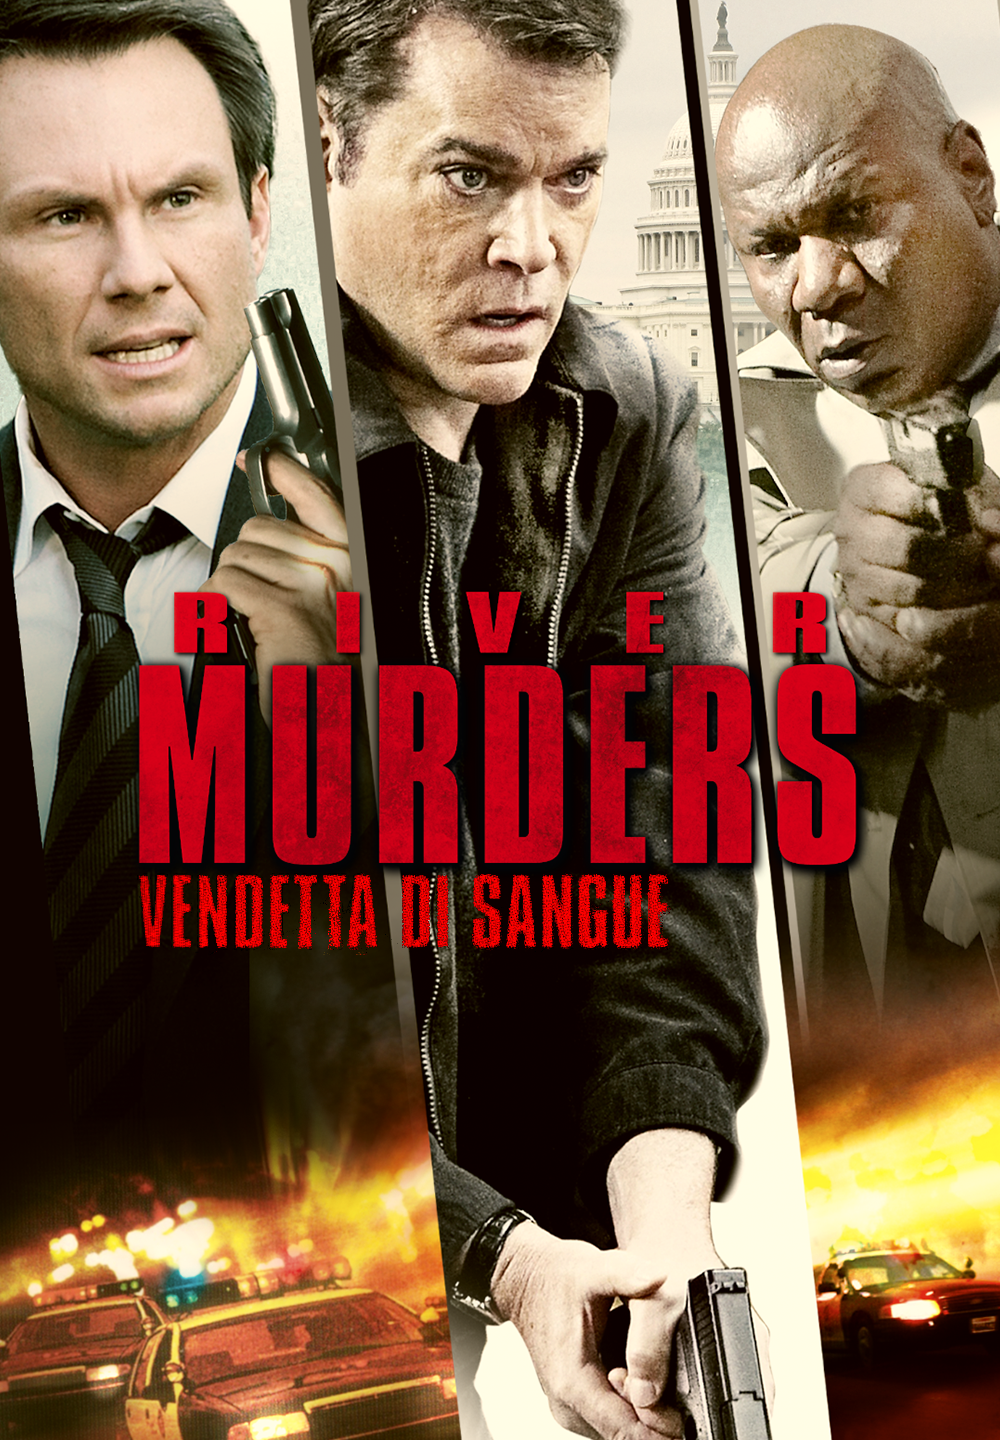 The River Murders – Vendetta di sangue [HD] (2011)